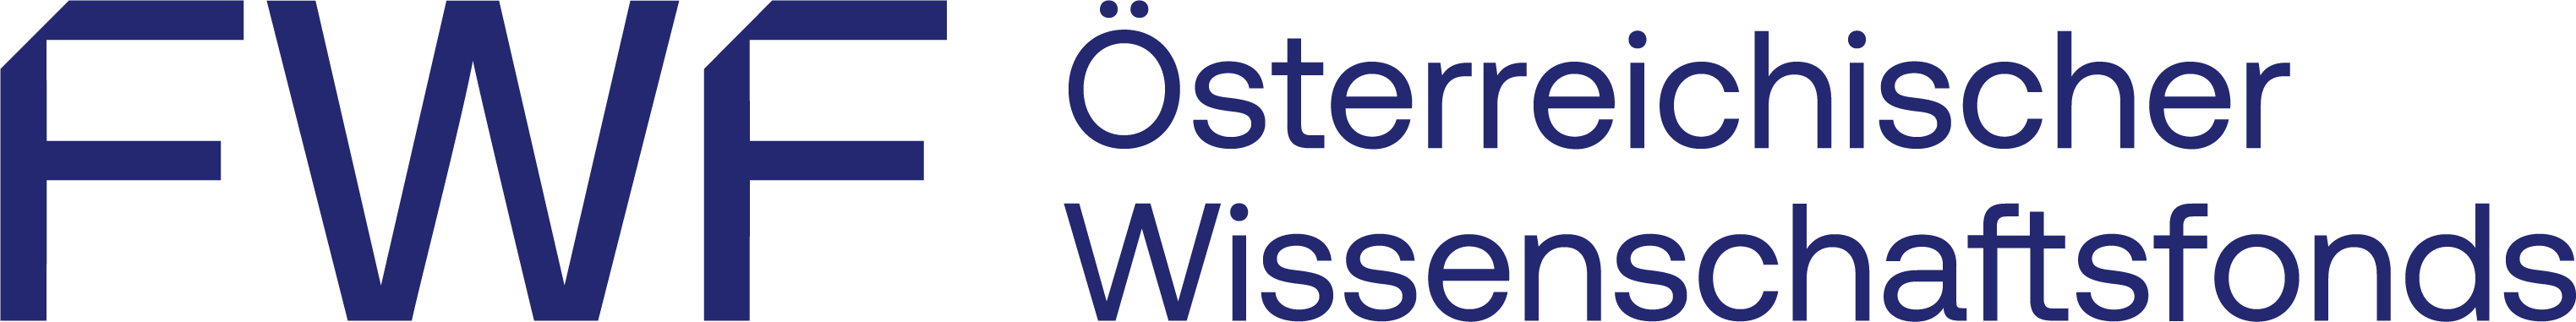 PNG image of FWF logo with text "Österreichischer Wissenschaftsfonds.".